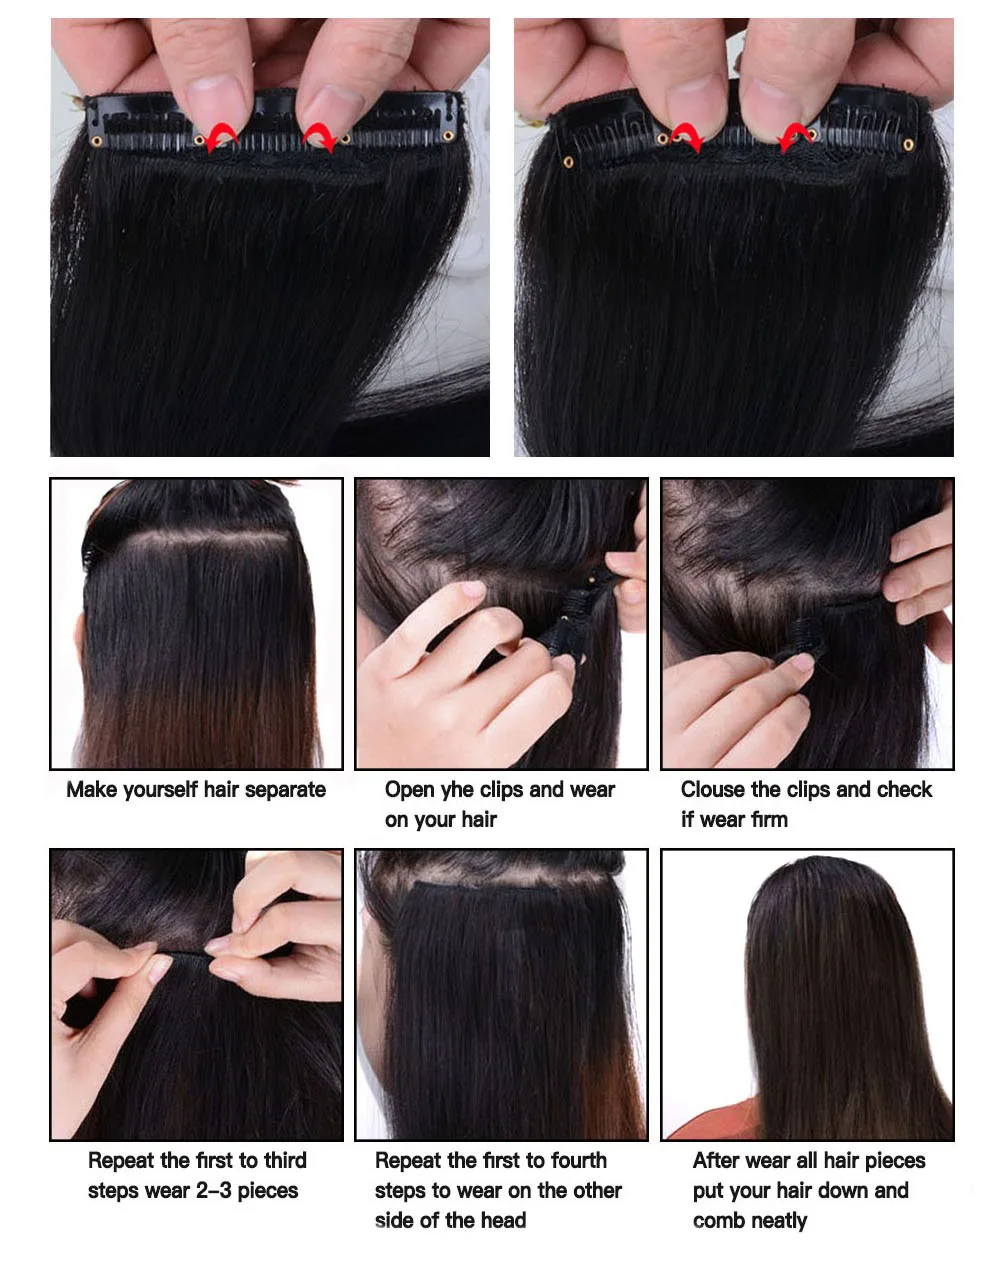 Moresoo заколки для наращивания волос Remy человеческие волосы на клипсах в полной головке вьющиеся волосы набор 7 шт/100 г/упак